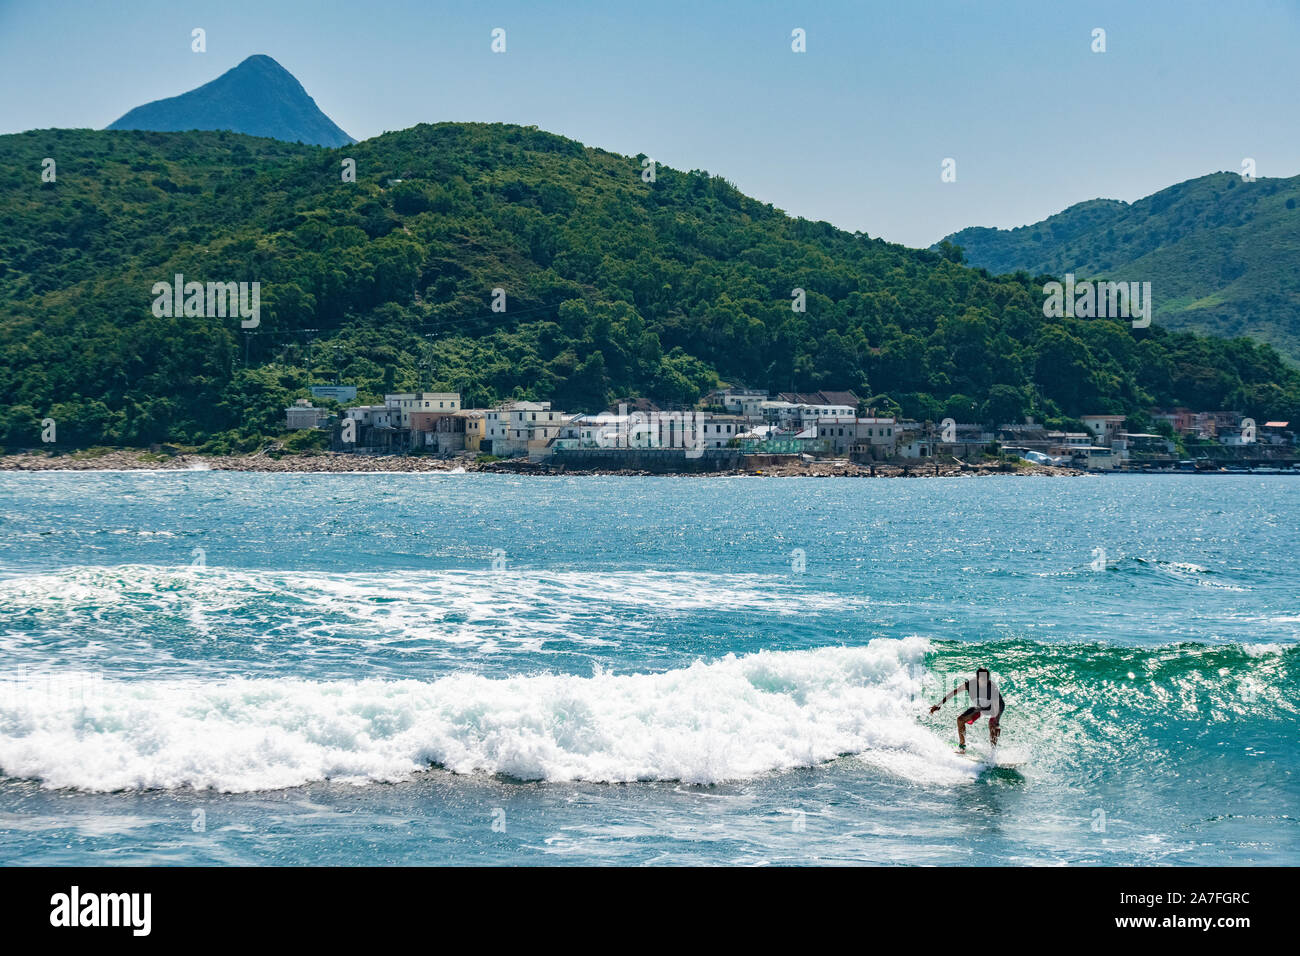 Surfen im Meer umgibt, dass Tap Mun Insel (auch als Gras Insel bekannt), einer von vielen Hong Kong Islands Stockfoto